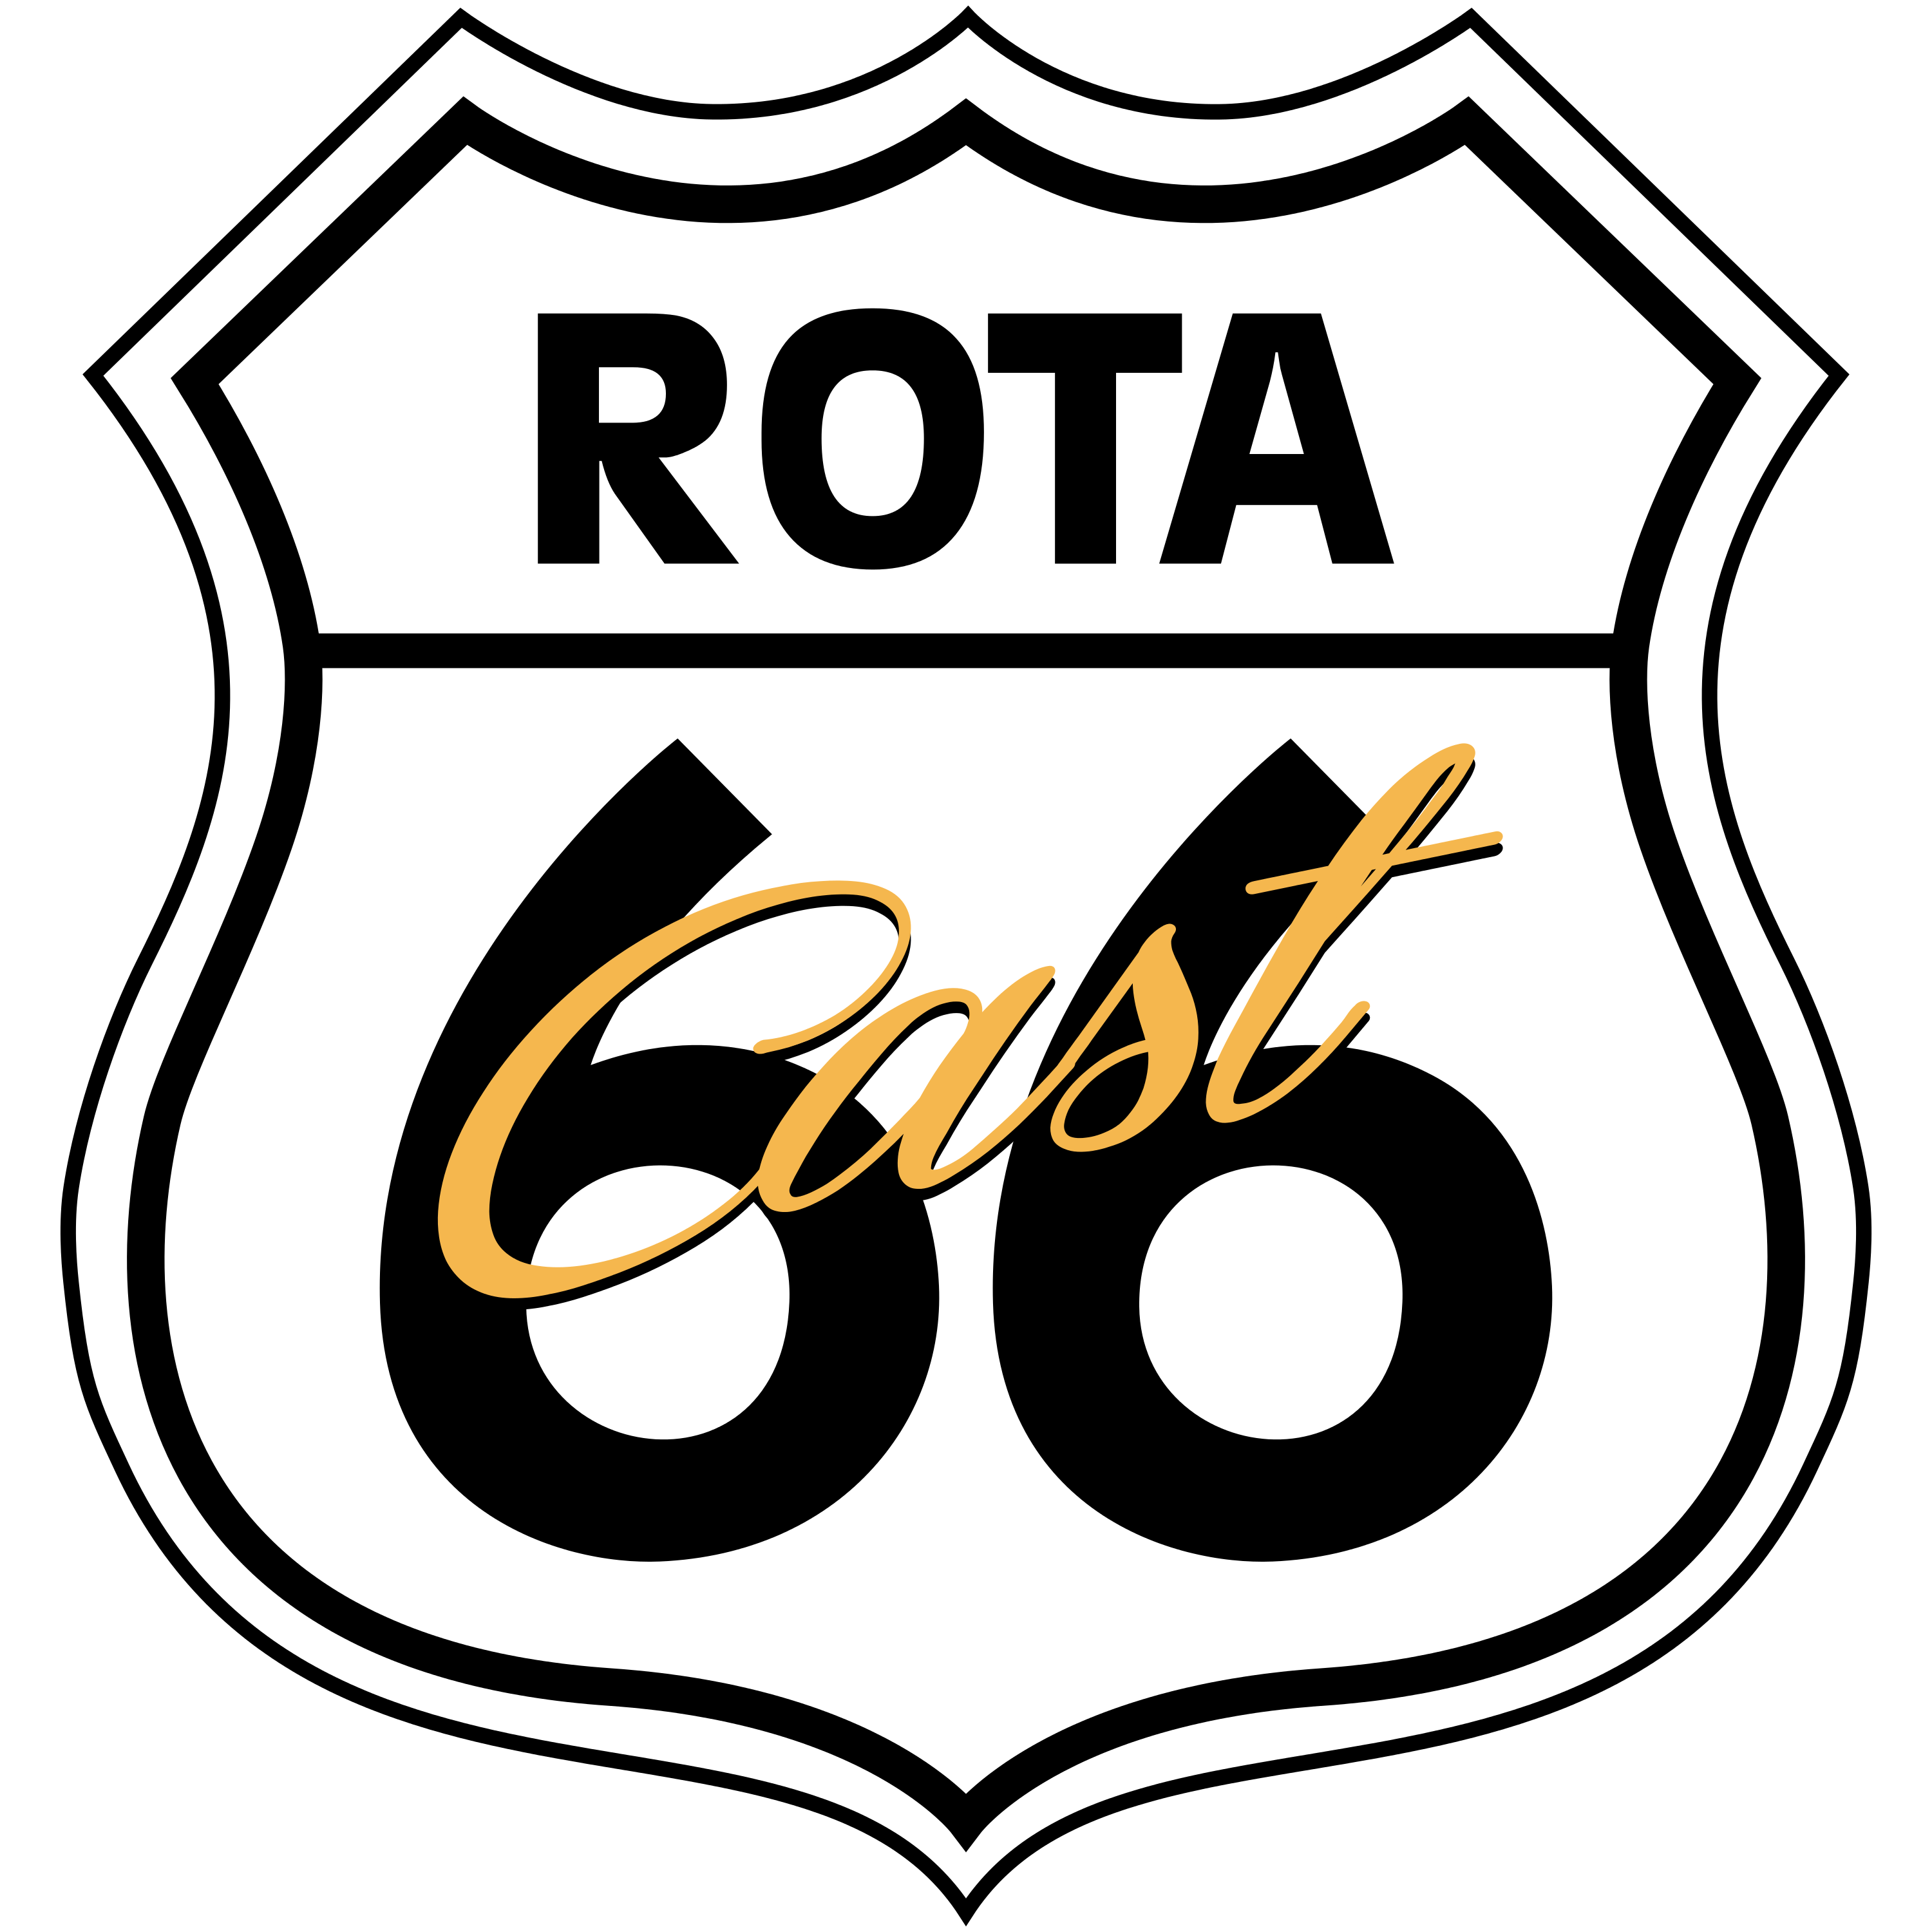 Rota 66 Cast